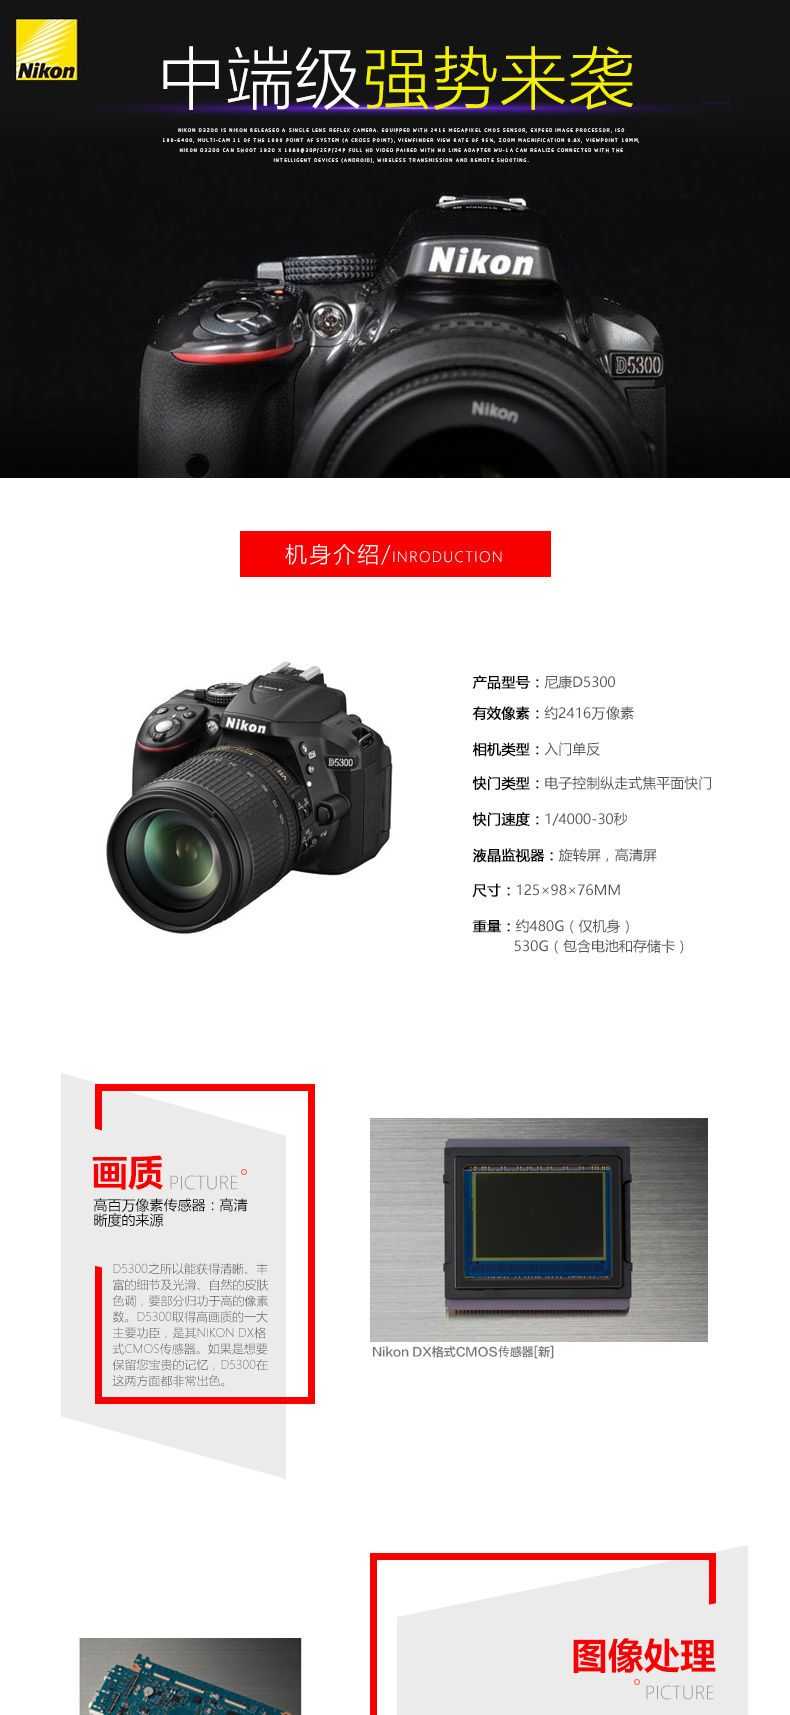 尼康(Nikon) D5300 （ DX 35mm f/1.8G） 标准定焦套装 2416万像素 翻转屏 WIFI功能